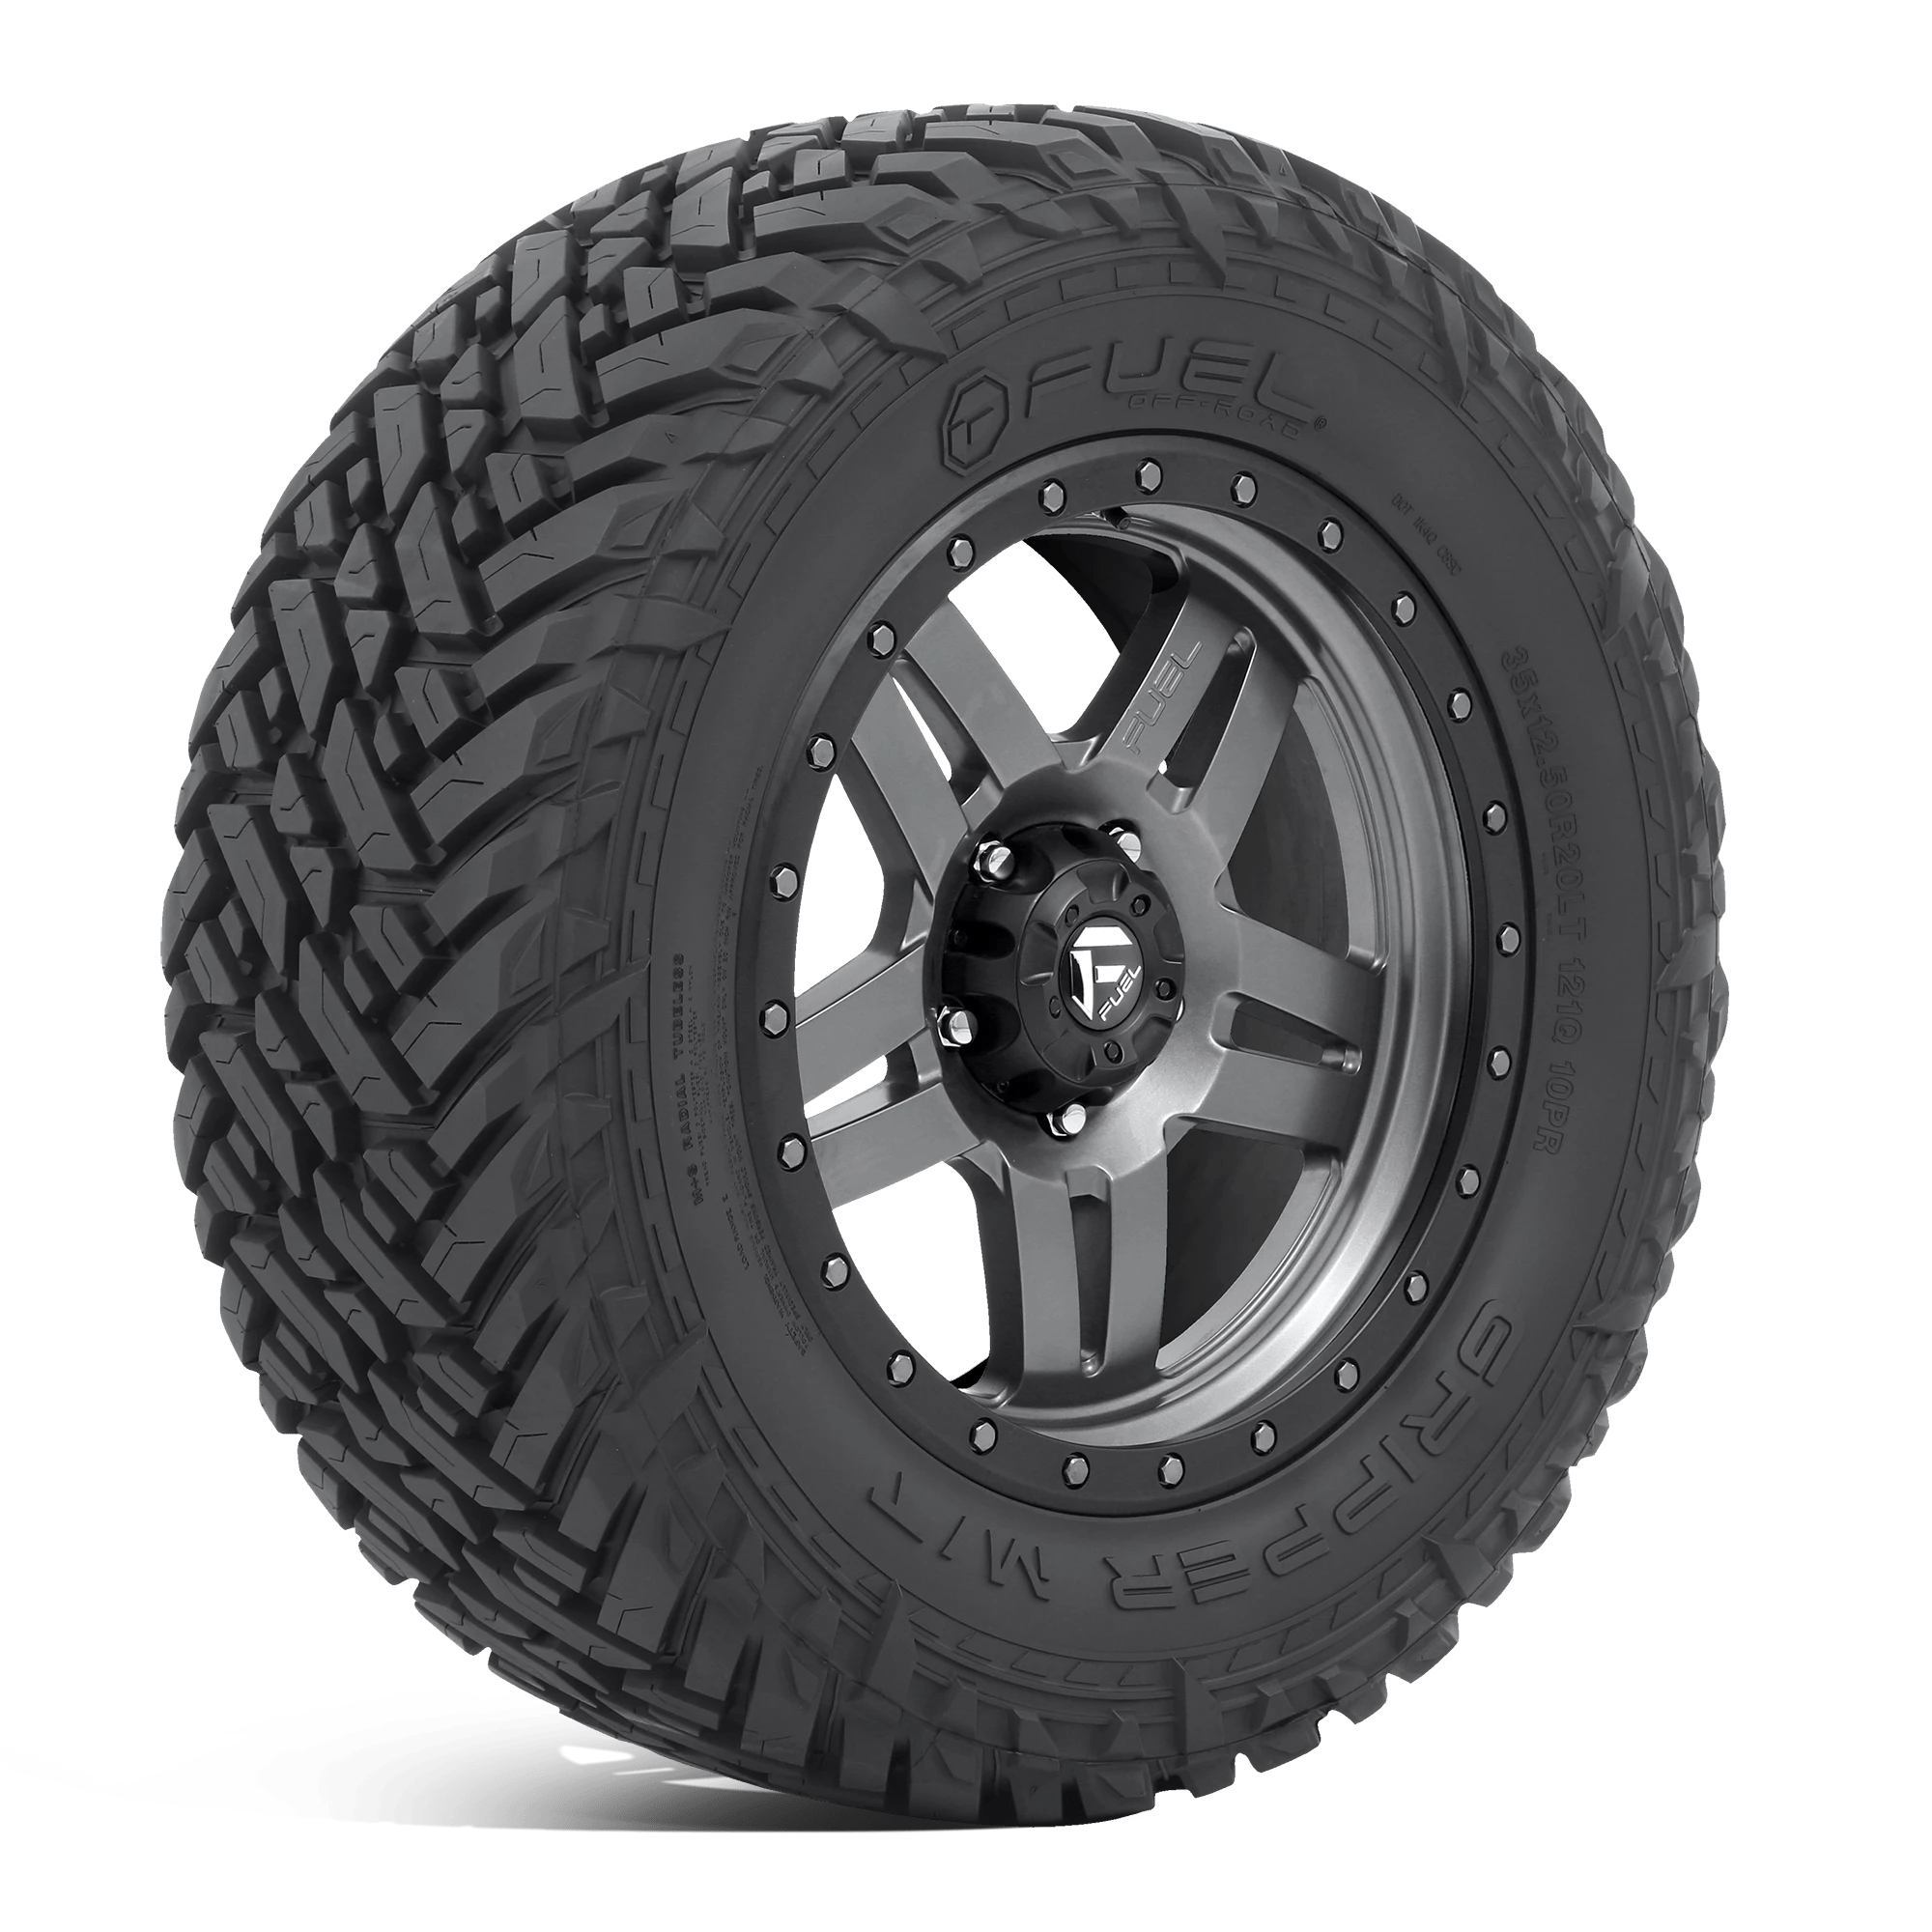 FUEL MUD GRIPPER 345/45R24LT (36.7X13.5R 24) Tires